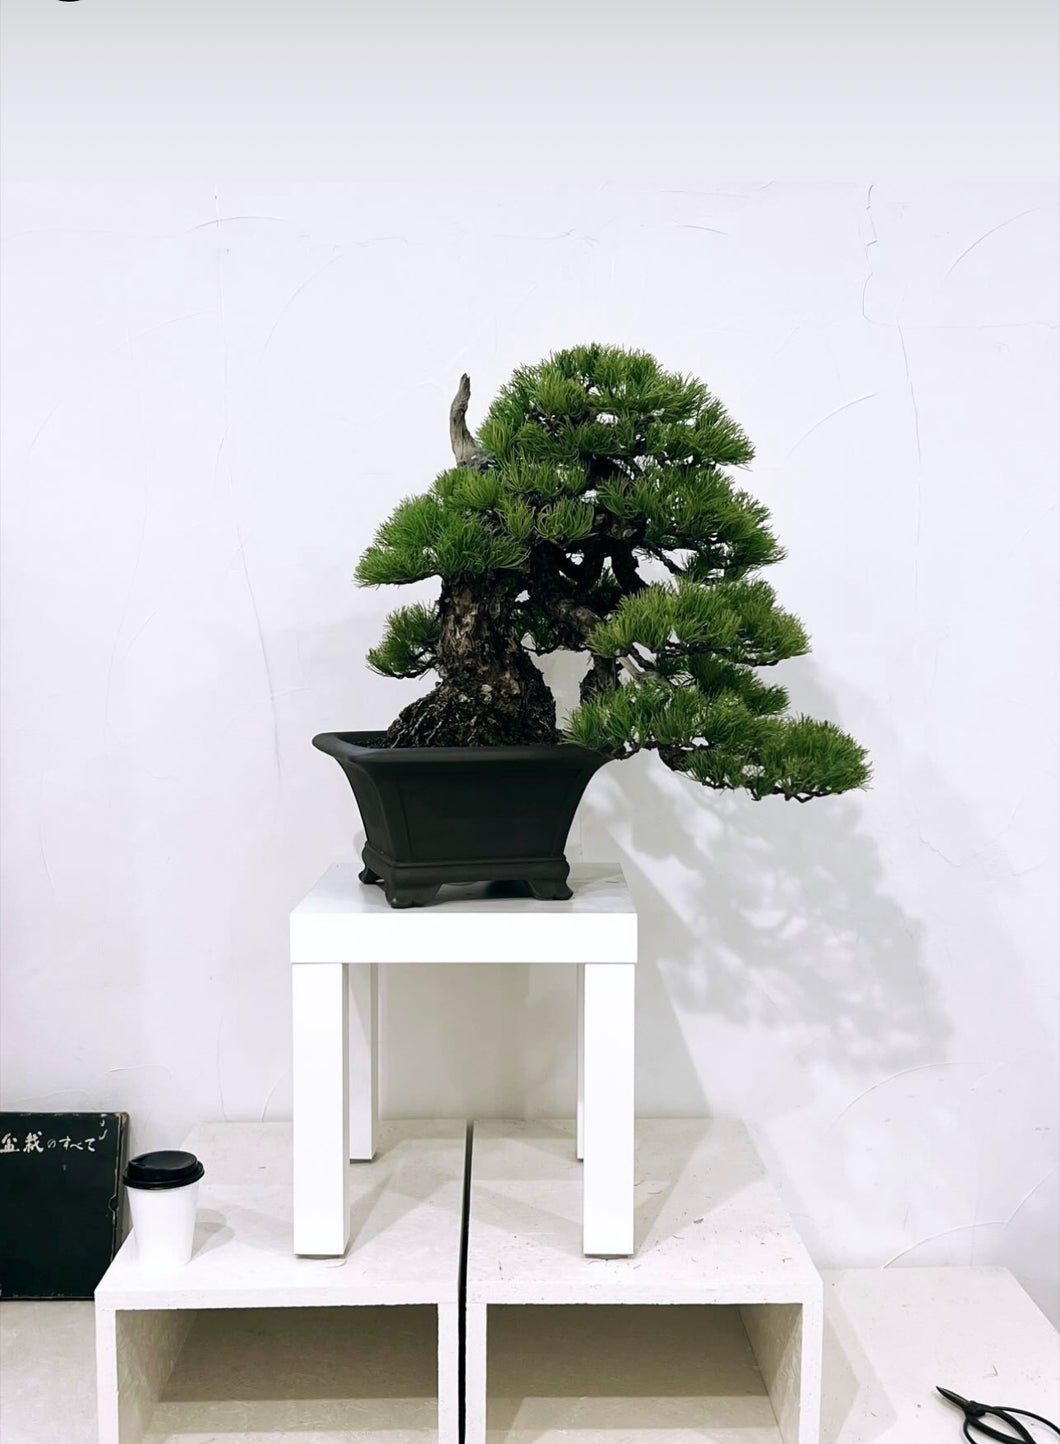 預訂日本🇯🇵五葉松 Japanese white pine(附上影片) 樹齡80年